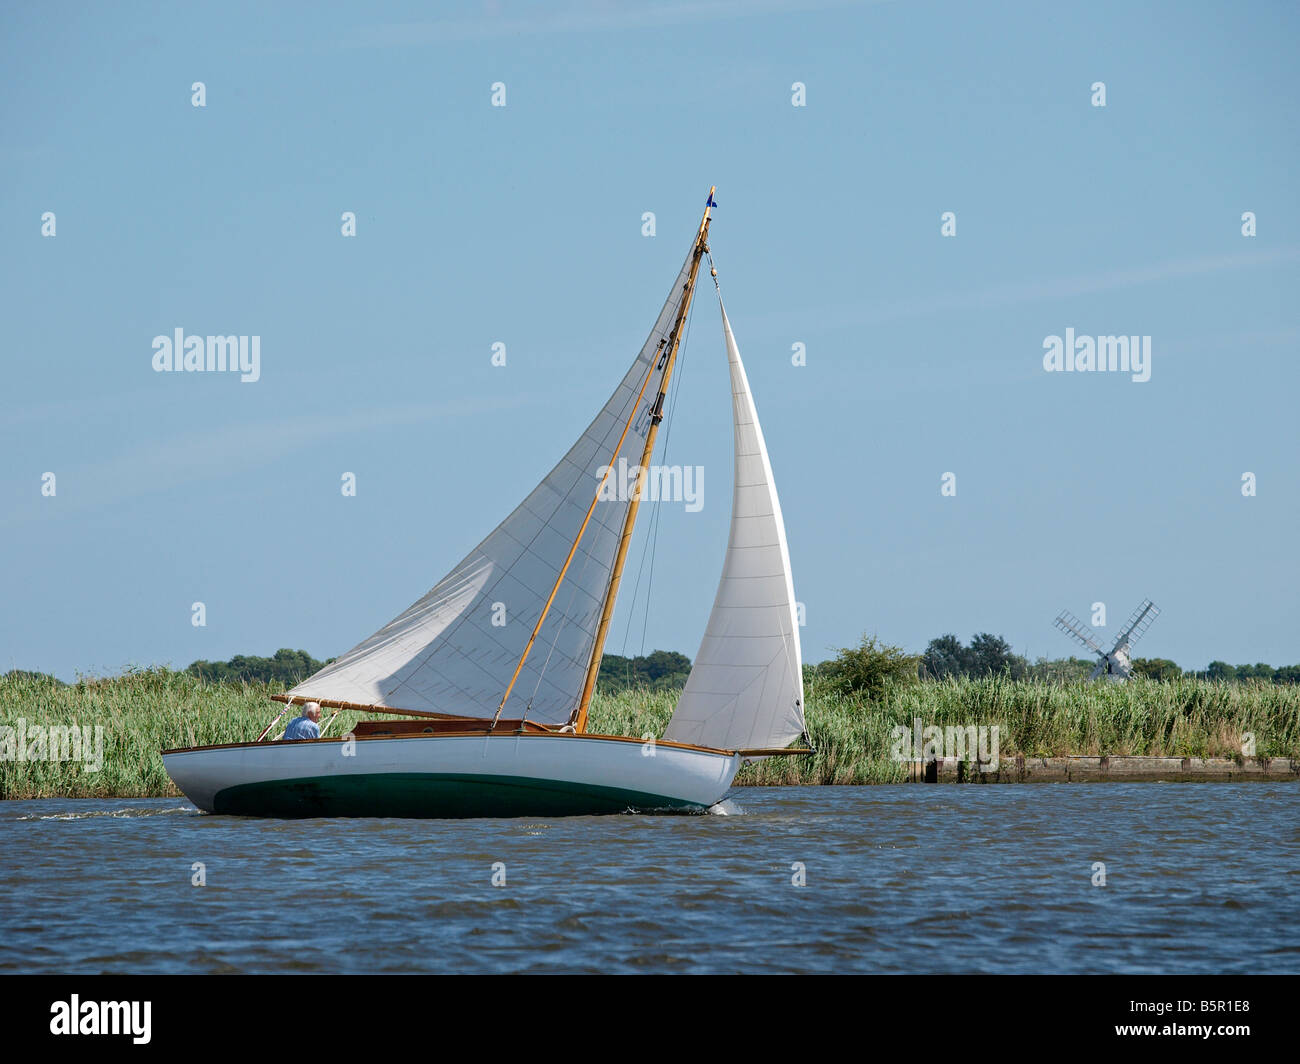 River Klasse' O' The wisp "traditionellen Holz- Vergnügen cruiser Segeln am Fluss auf der Norfolk Broads East Anglia England Großbritannien Stockfoto